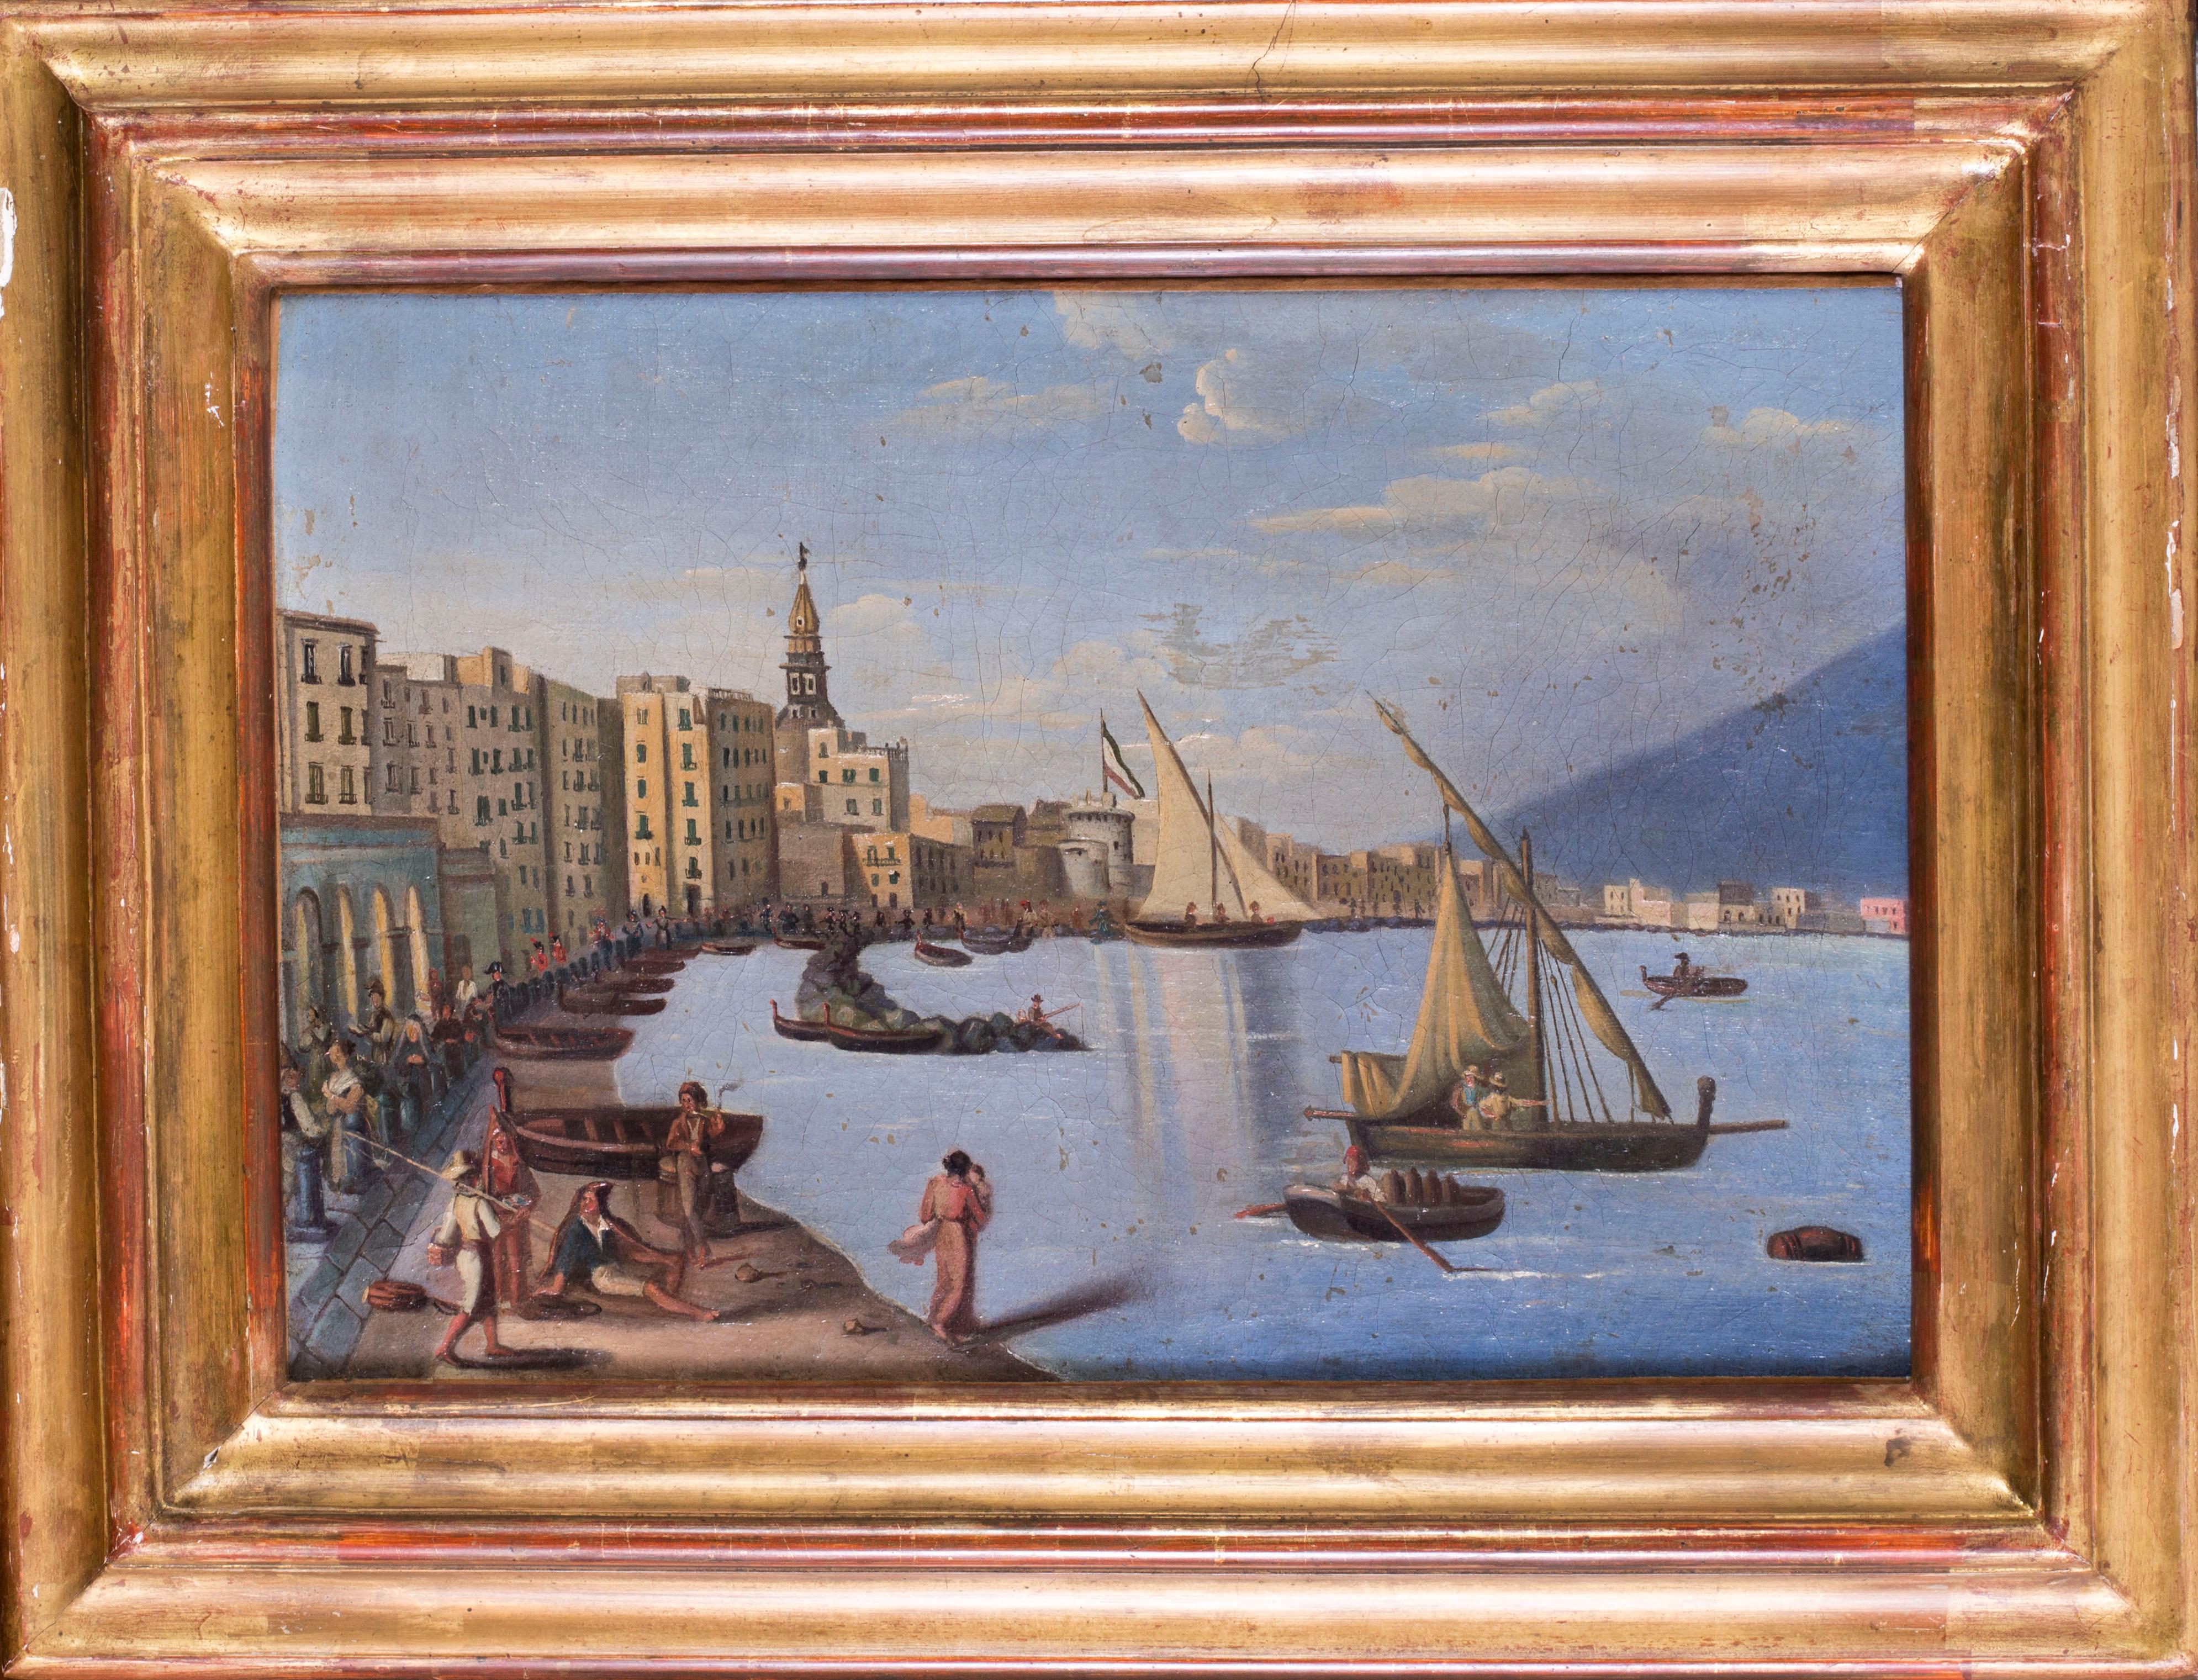 Naples während der napoleonischen Besatzung, Gemälde in Öl auf Leinwand, um 1810 – Painting von Unknown